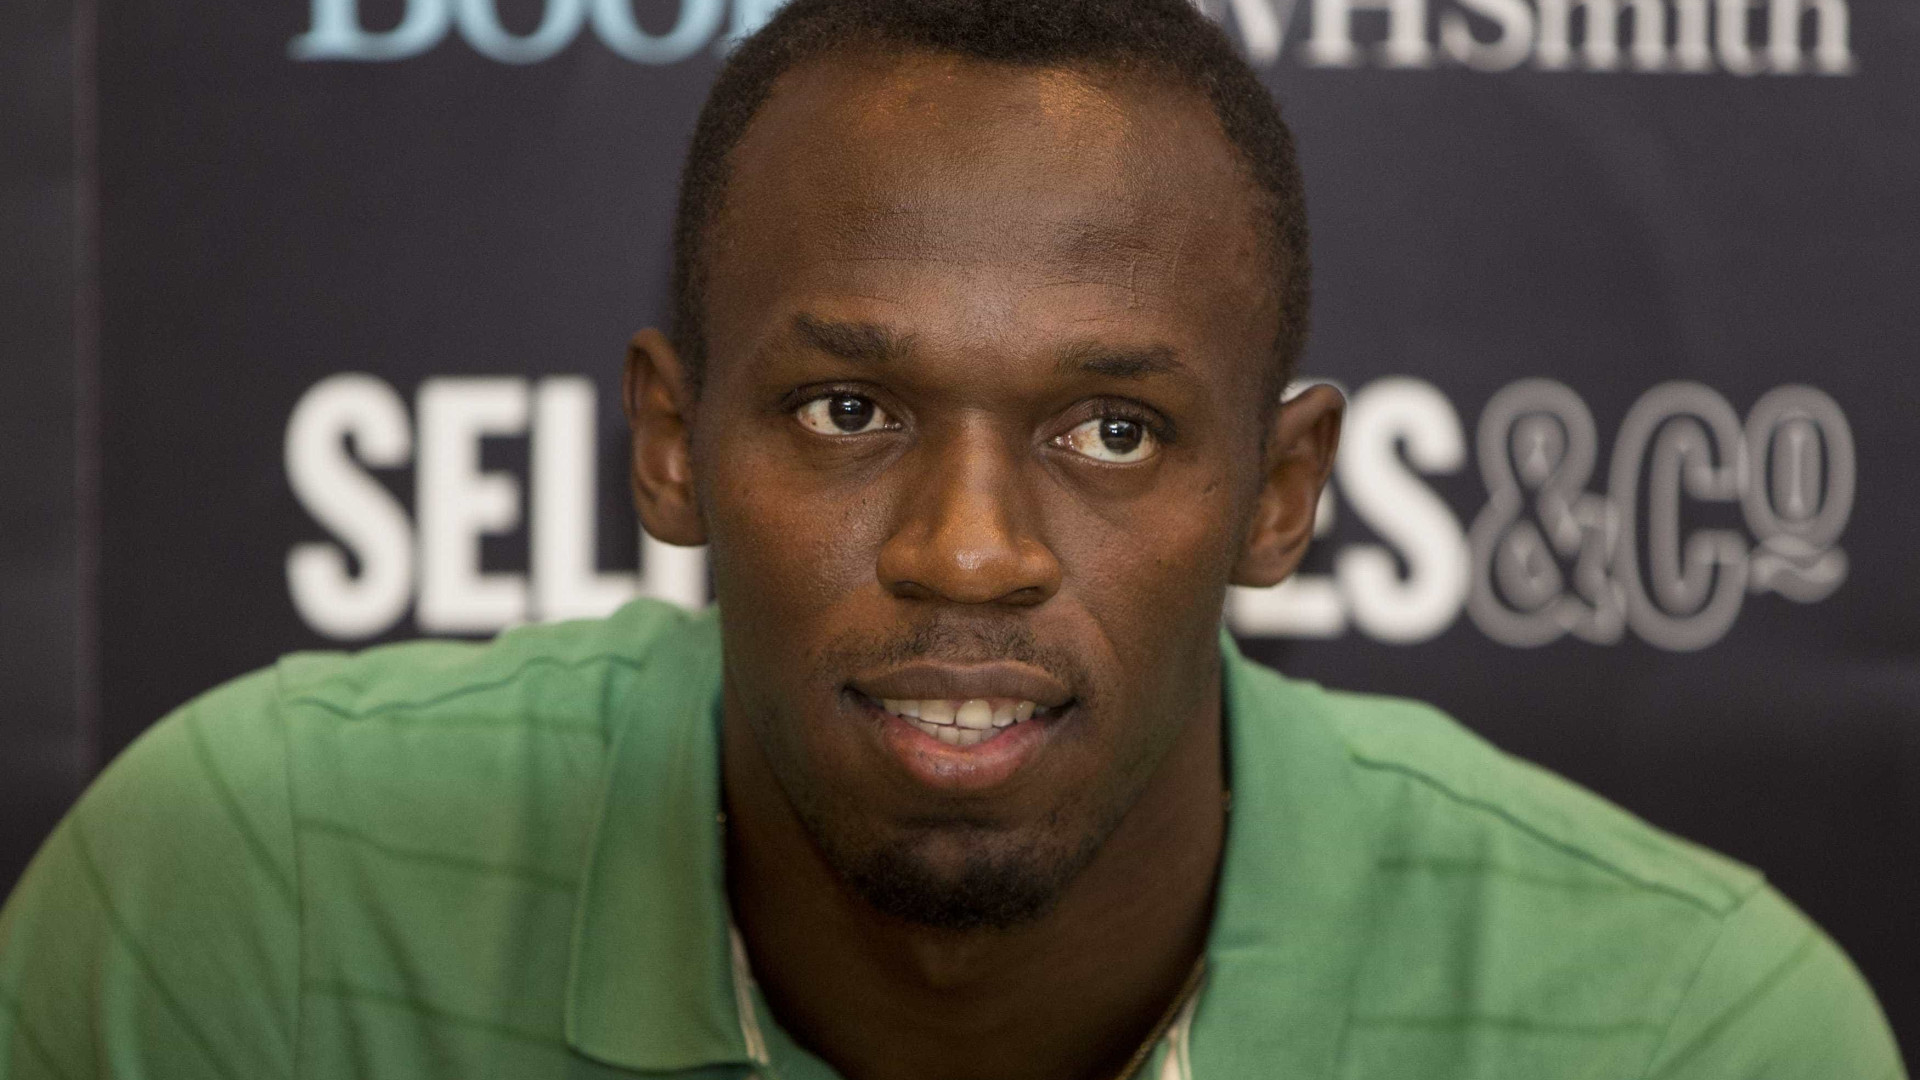 Usain Bolt doa 1 milhão de euros a escola jamaicana